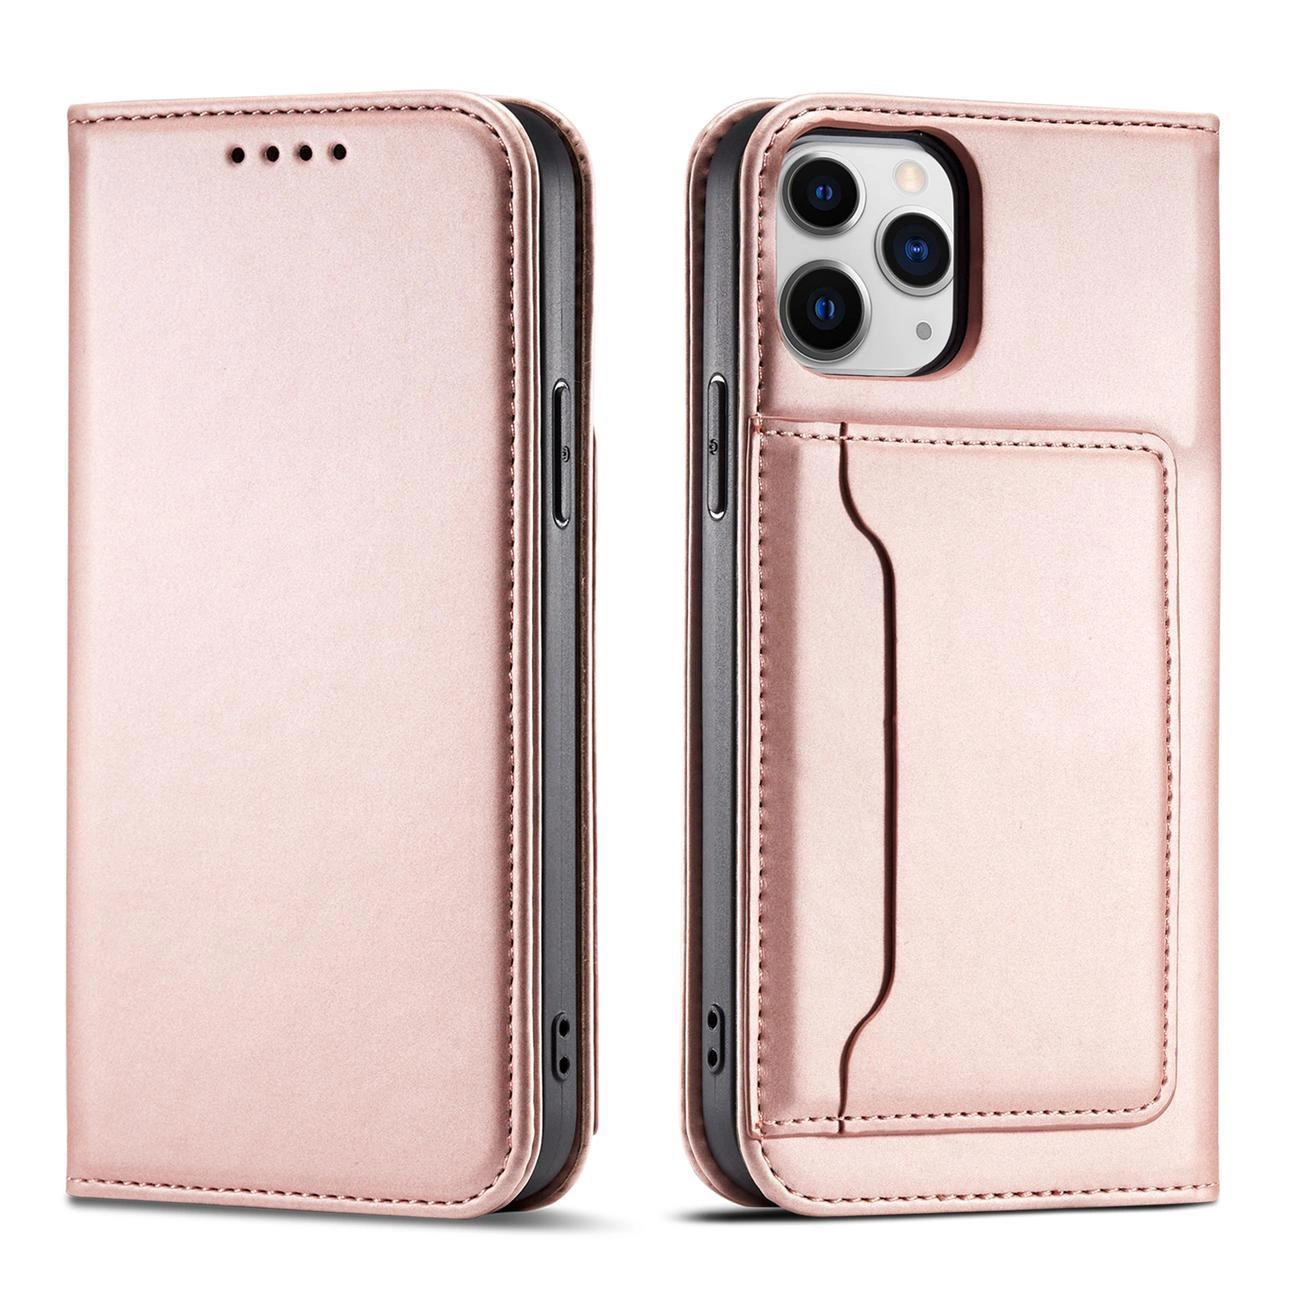 Hurtel Magnet Card Case pro iPhone 12 Pro card wallet case card holder pink